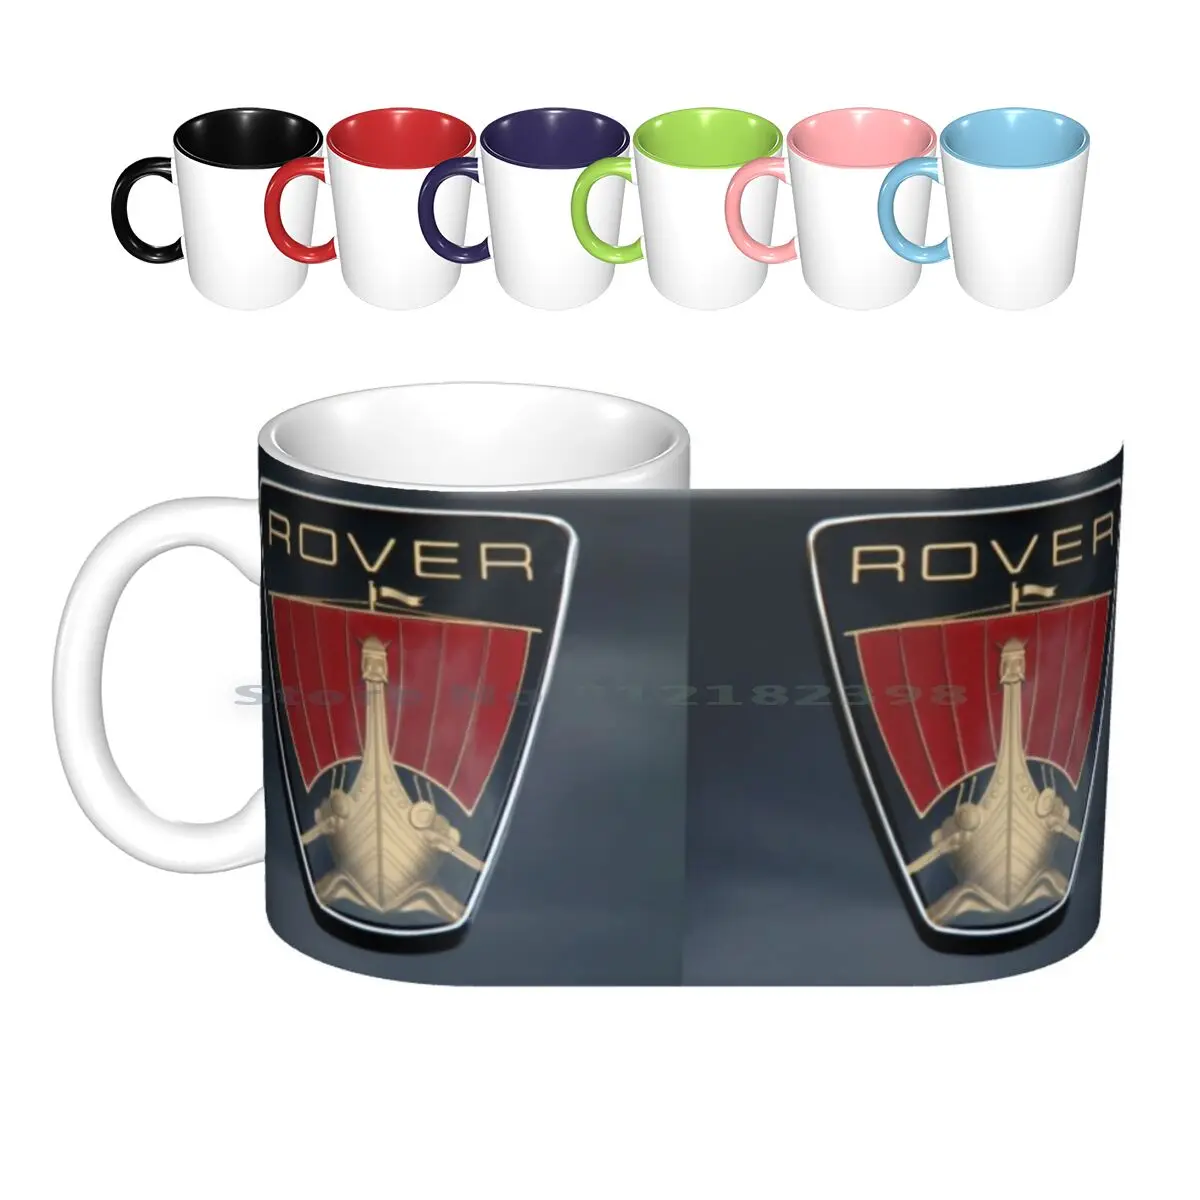 

Классические керамические кружки Rover P6 с изображением корабля викингов (на черном фоне), чашки для кофе, кружка для молока, чая, Rover P6 Rover 2000 Rover